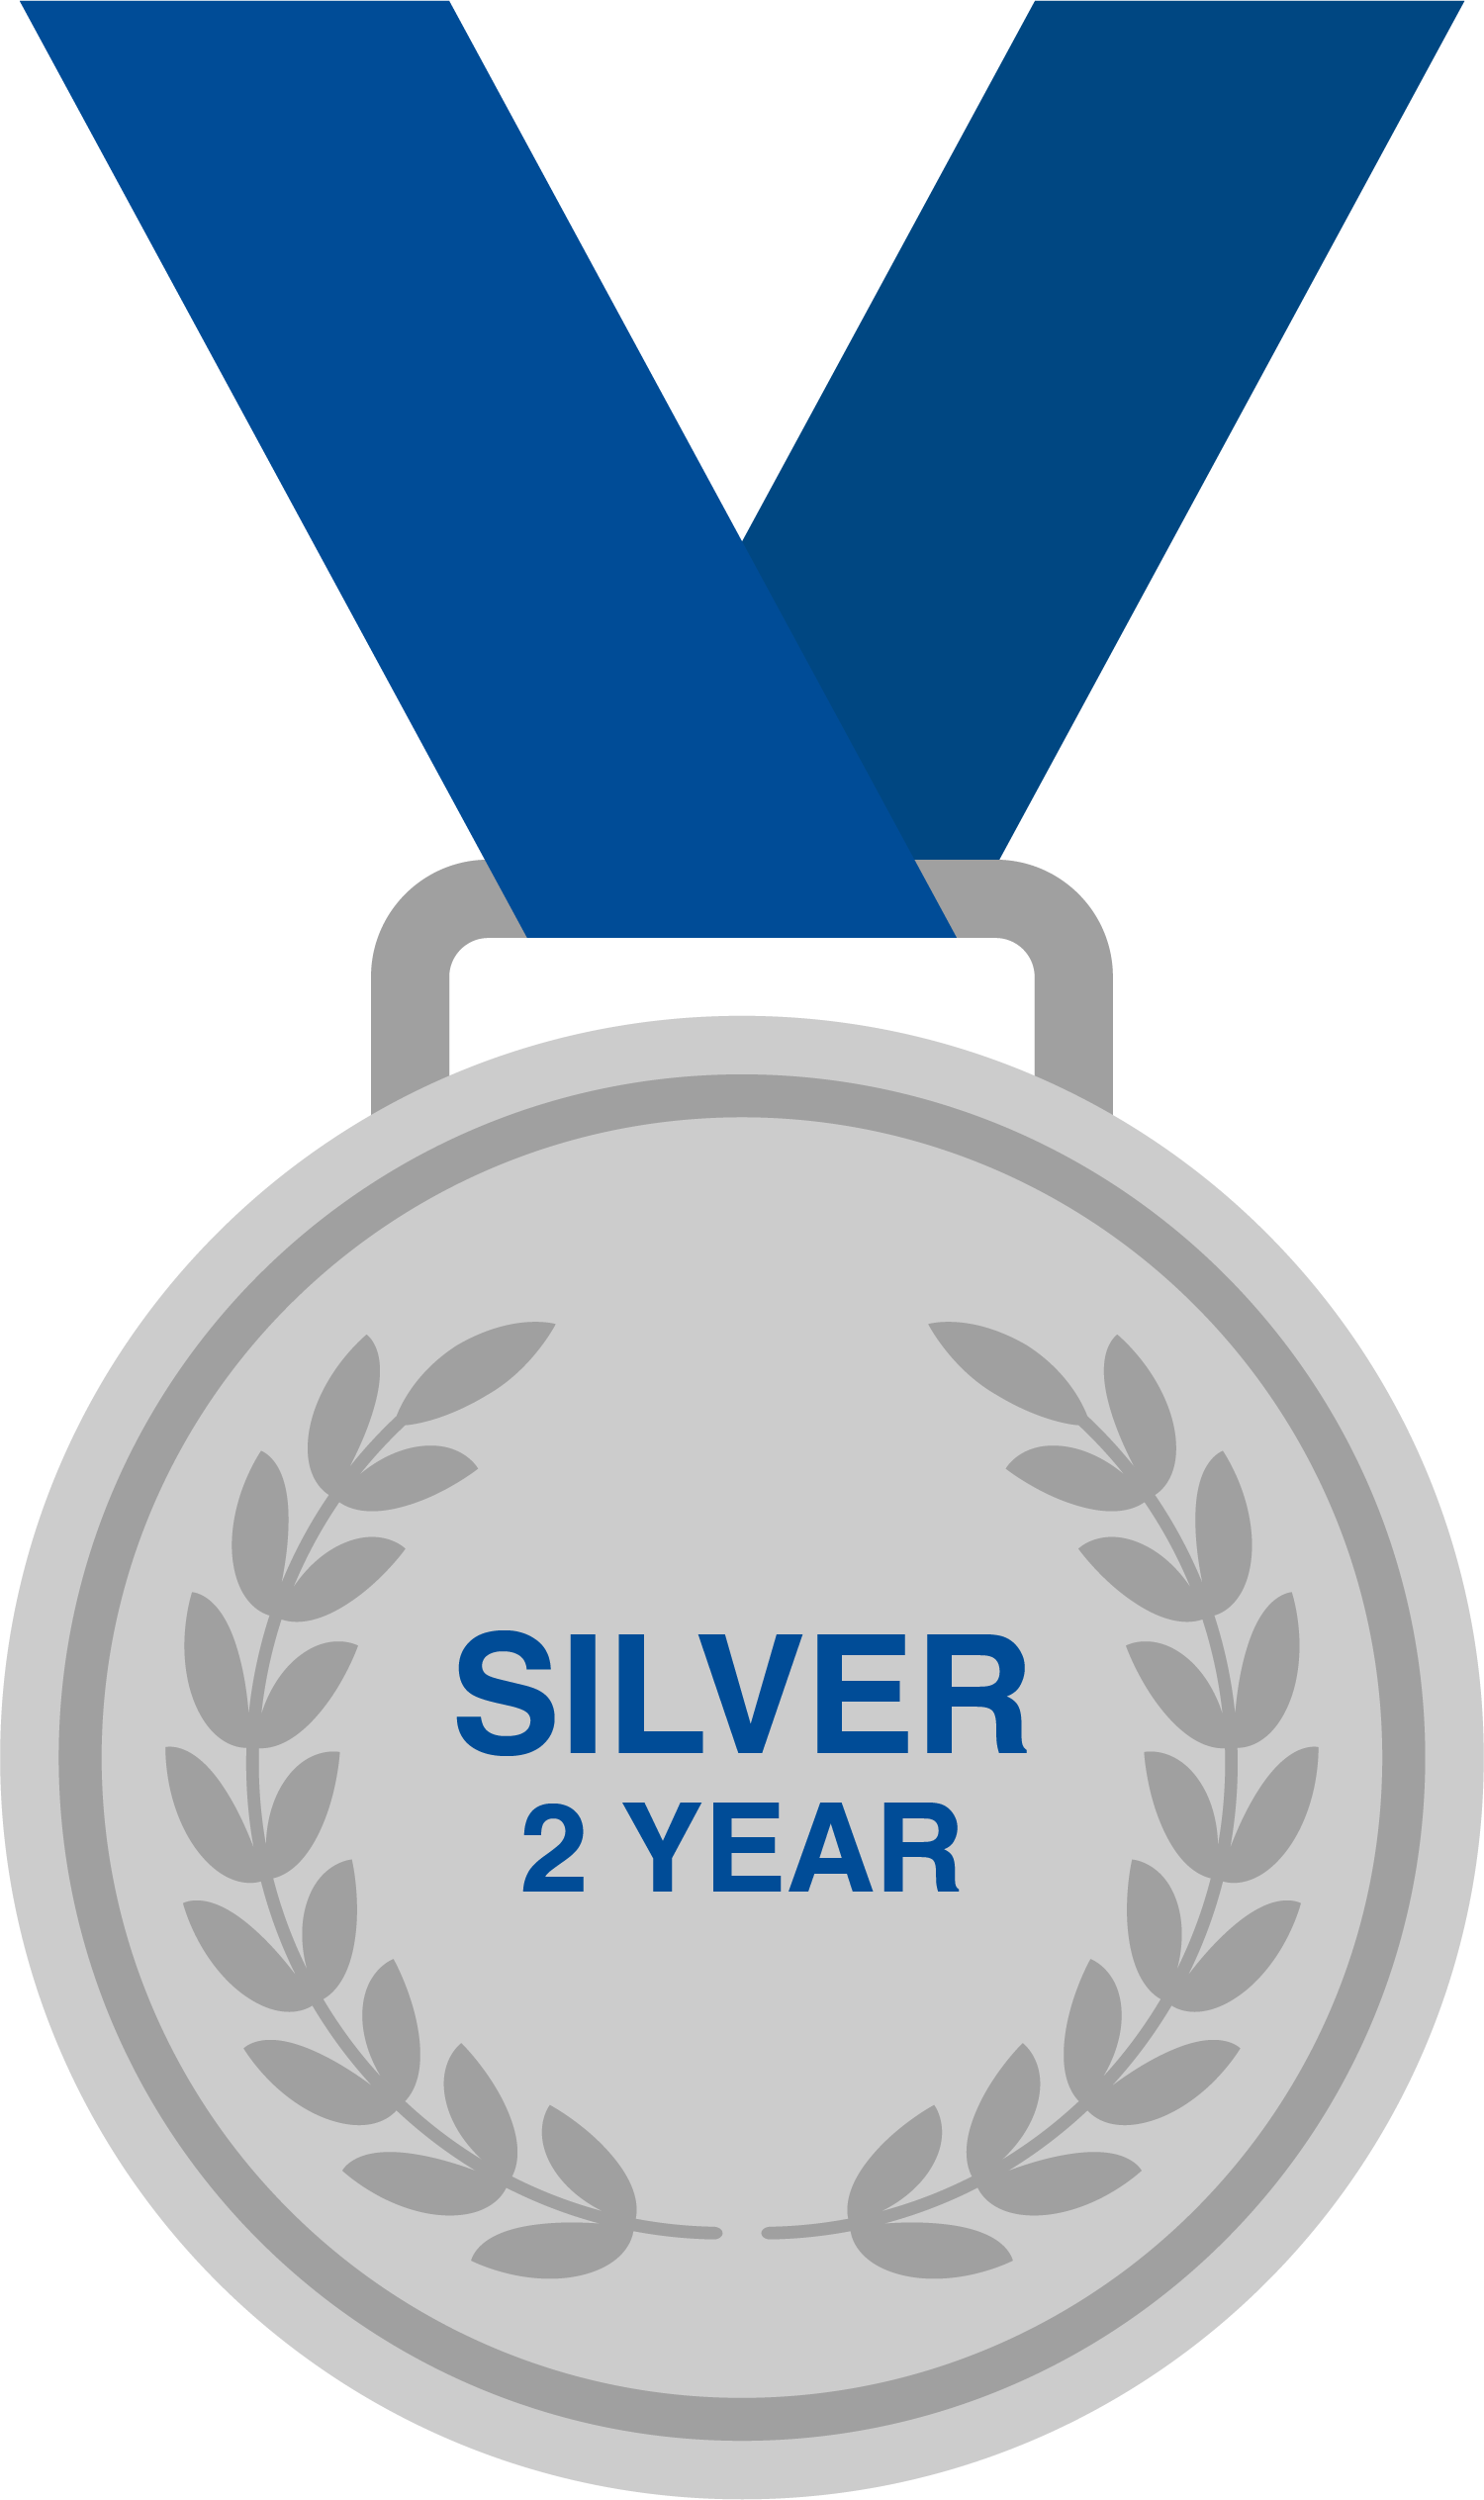 Silver - 2 Year